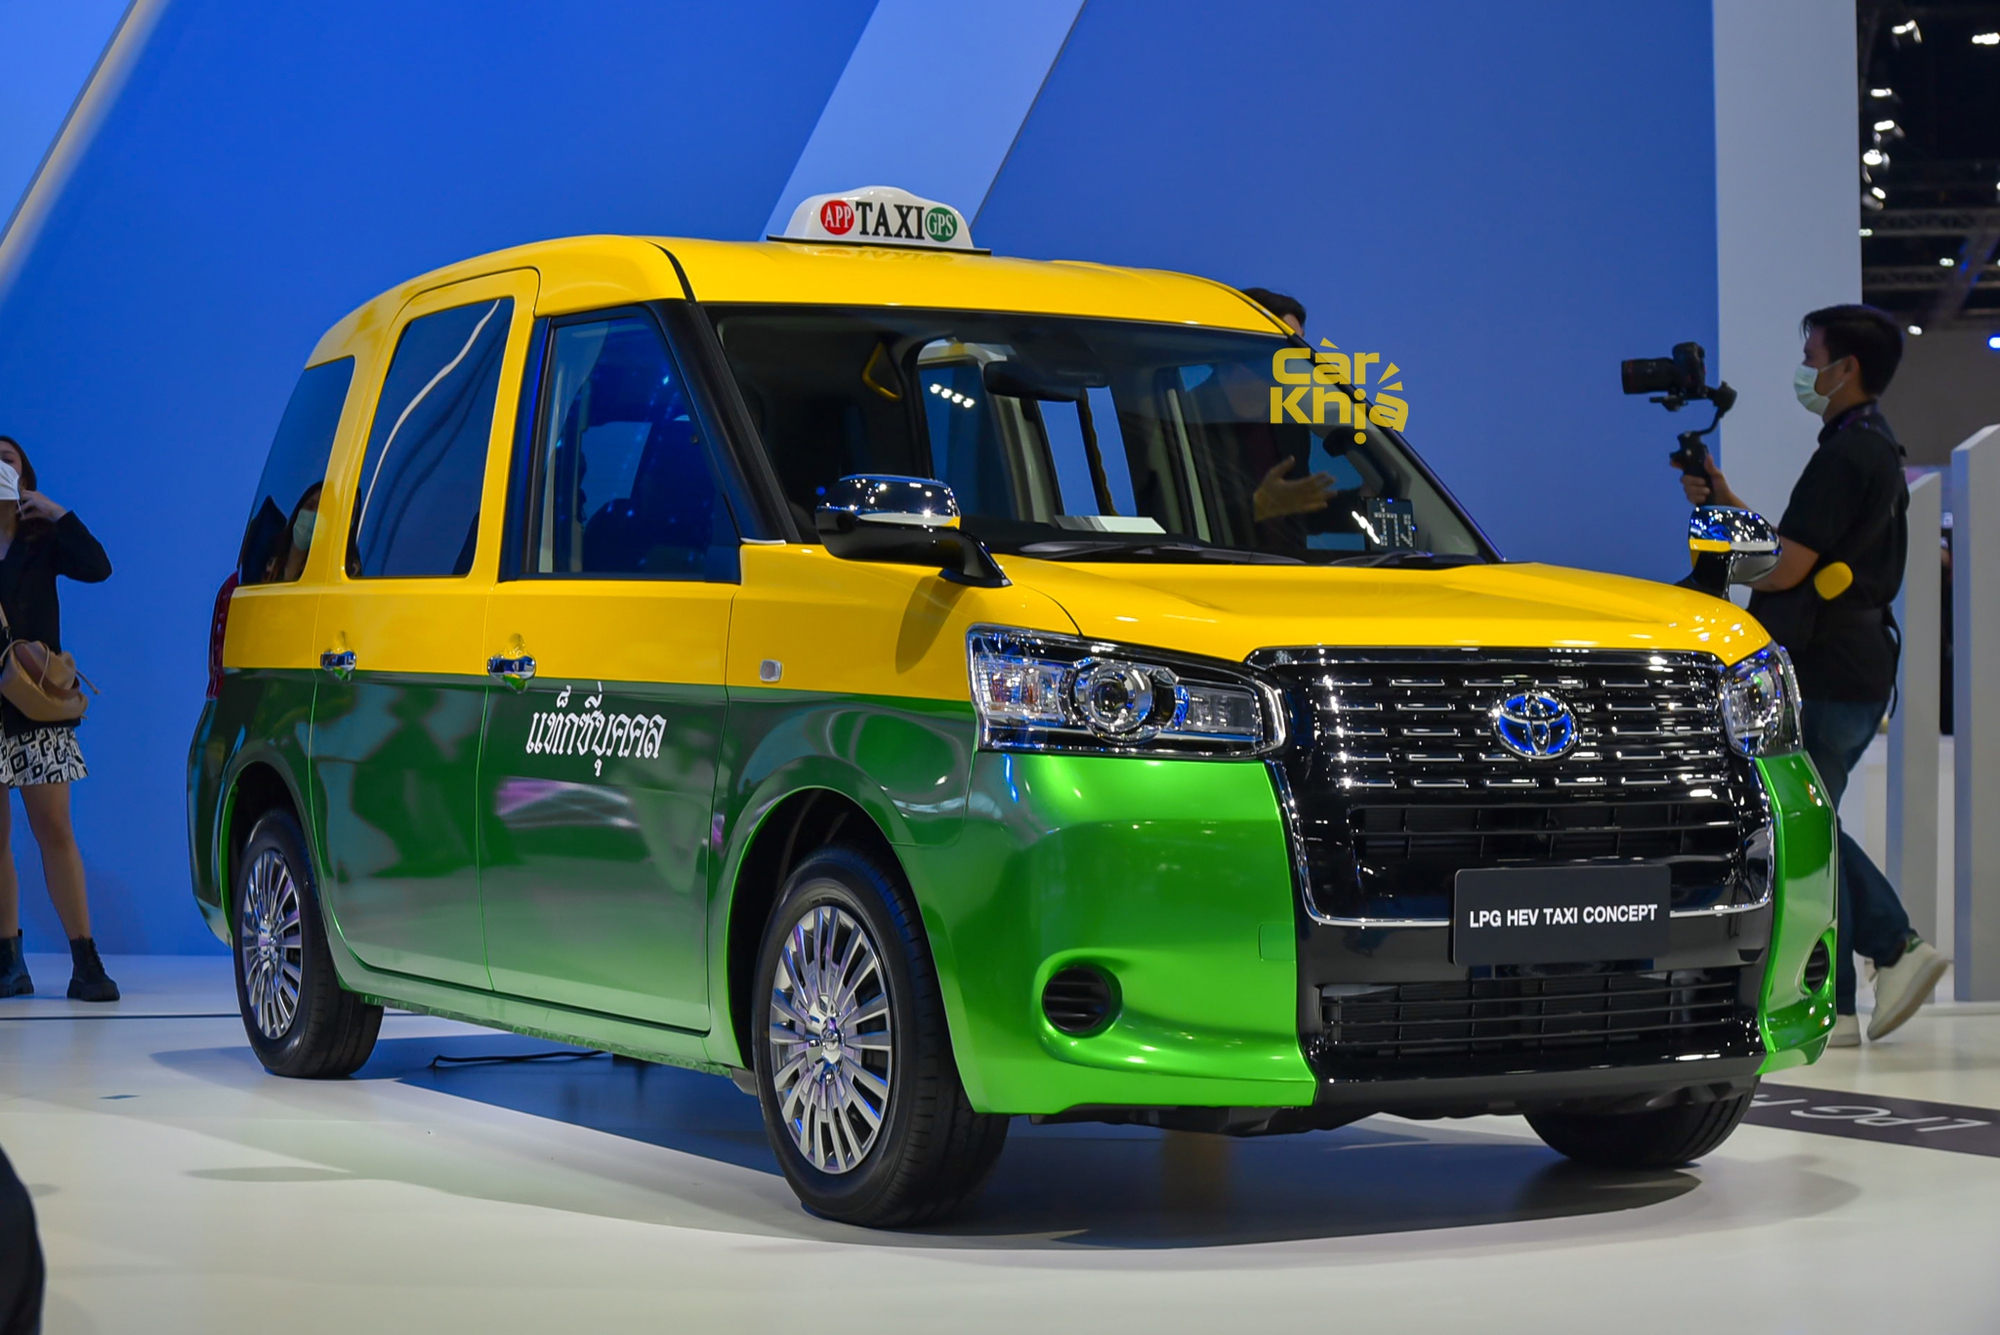 Toyota taxi - Ảnh 1.